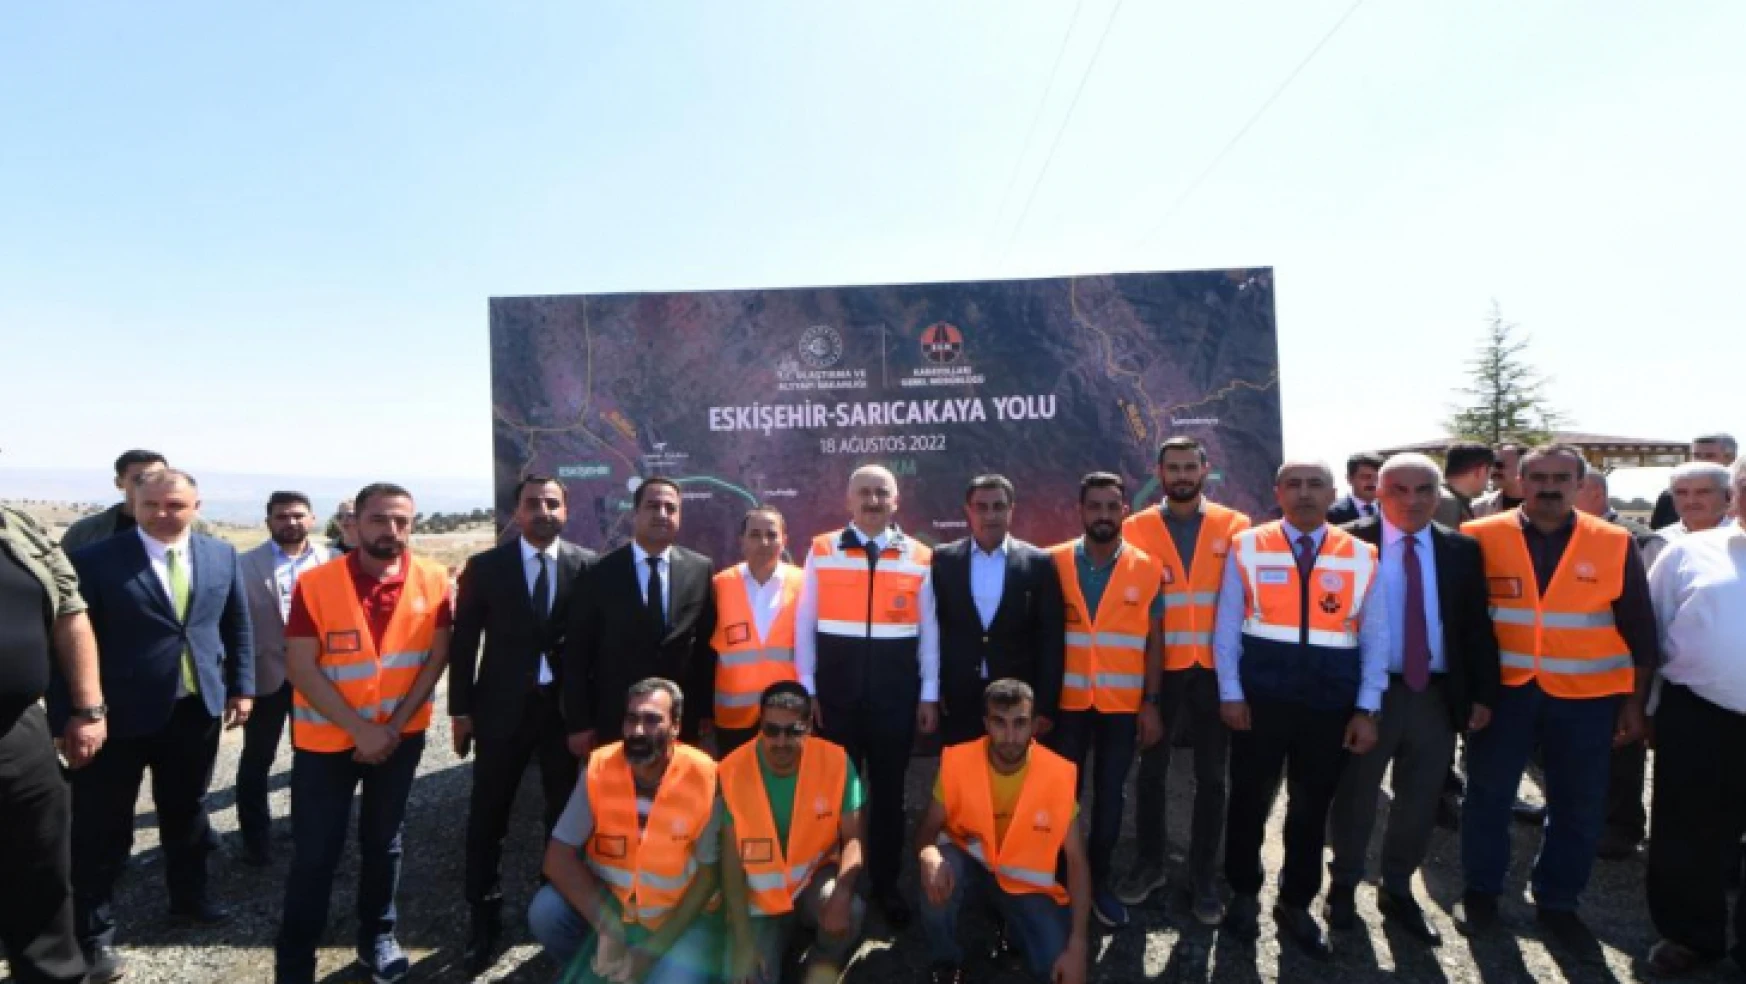 Ulaştırma ve Altyapı Bakanı Adil Karaismailoğlu, Eskişehir-Sarıcakaya yolu yapım şantiyesinde açıklamalarda bulundu.